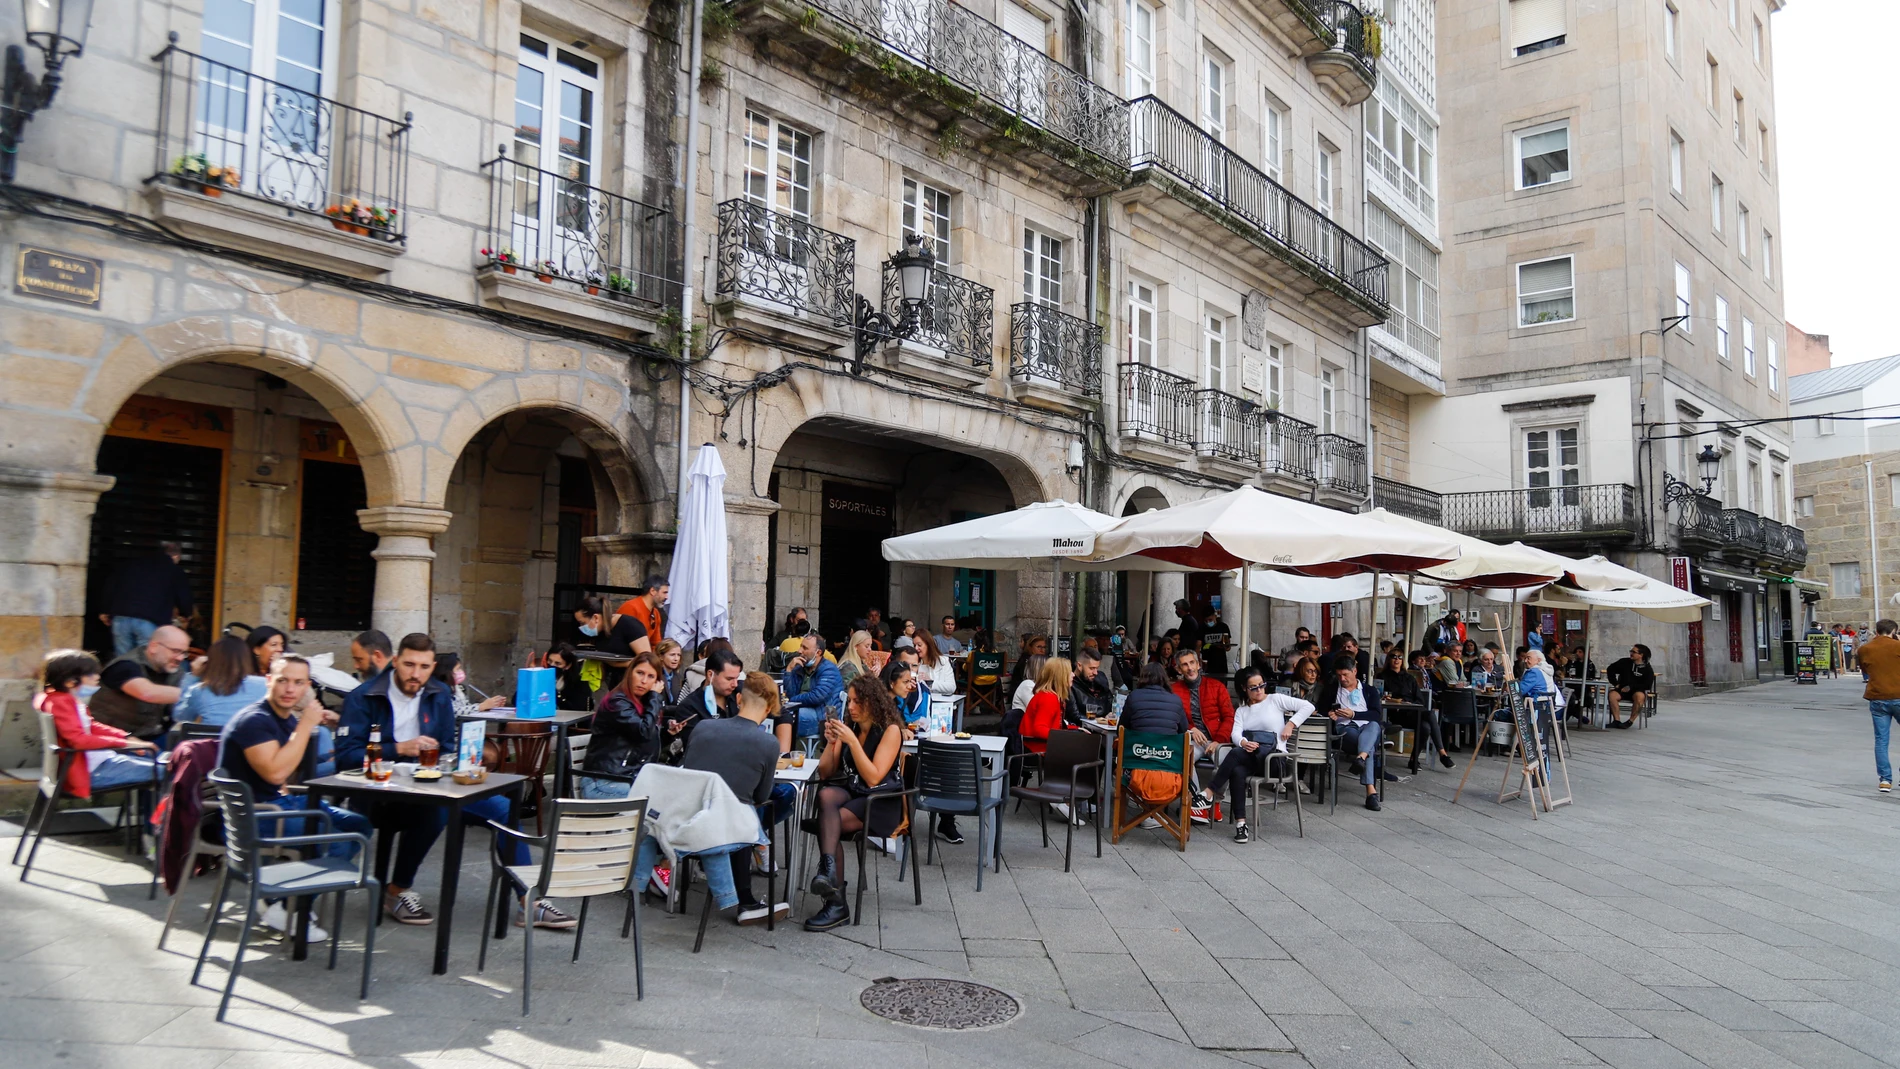 Grupos de comensales sentados en una terraza de un establecimiento, en Vigo, Galicia (España)